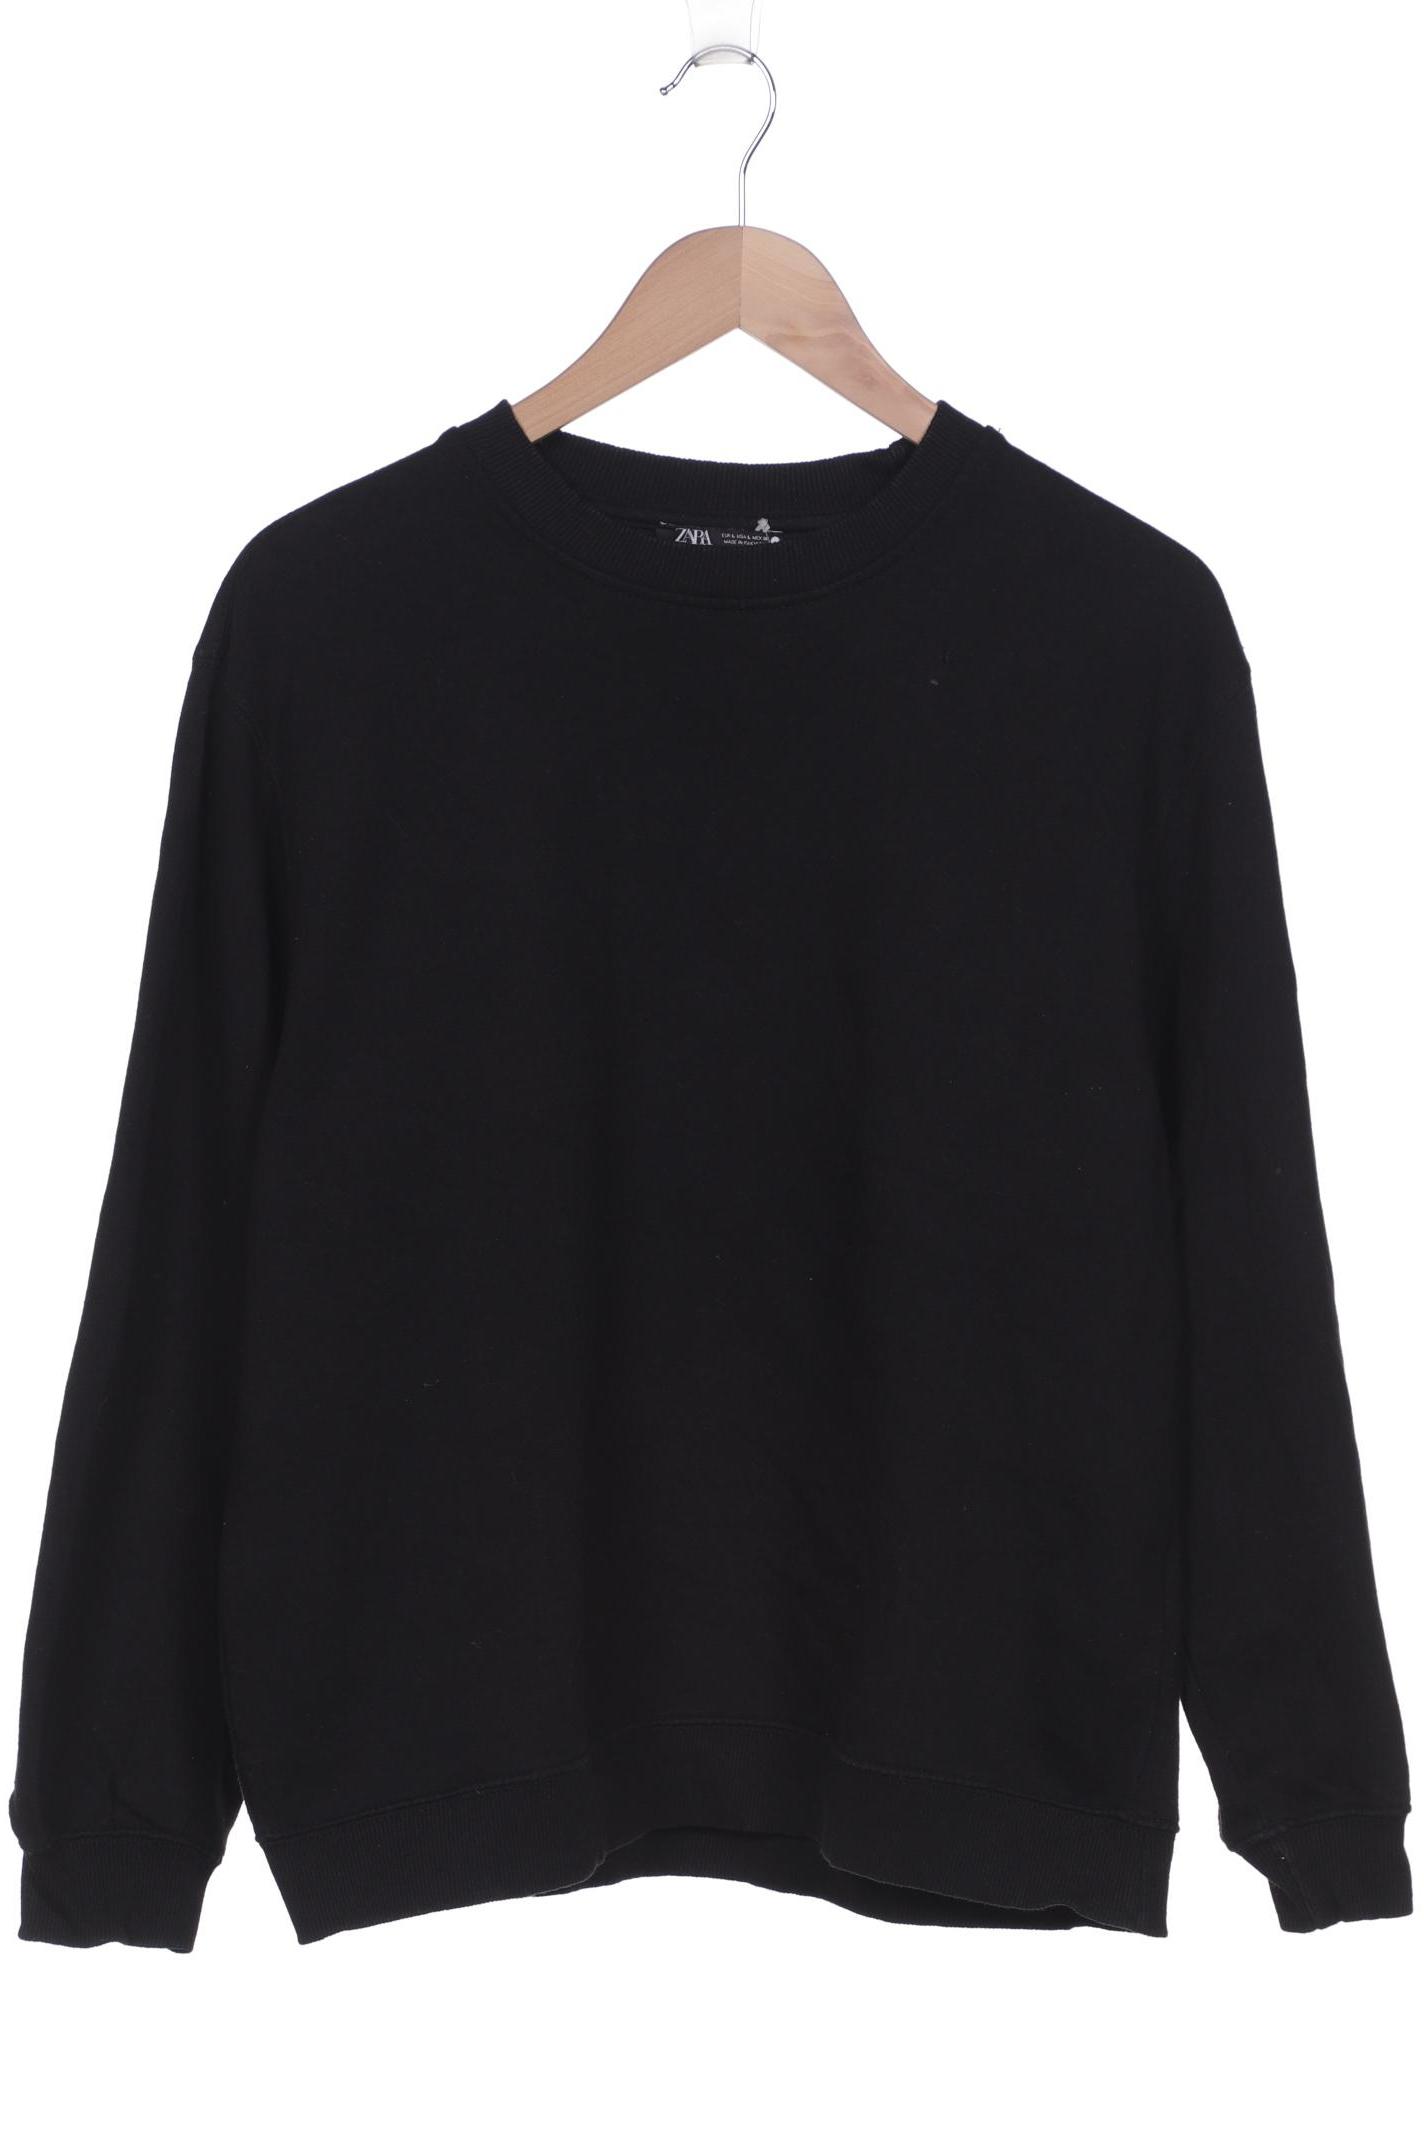 Zara Damen Sweatshirt, schwarz, Gr. 42 von ZARA